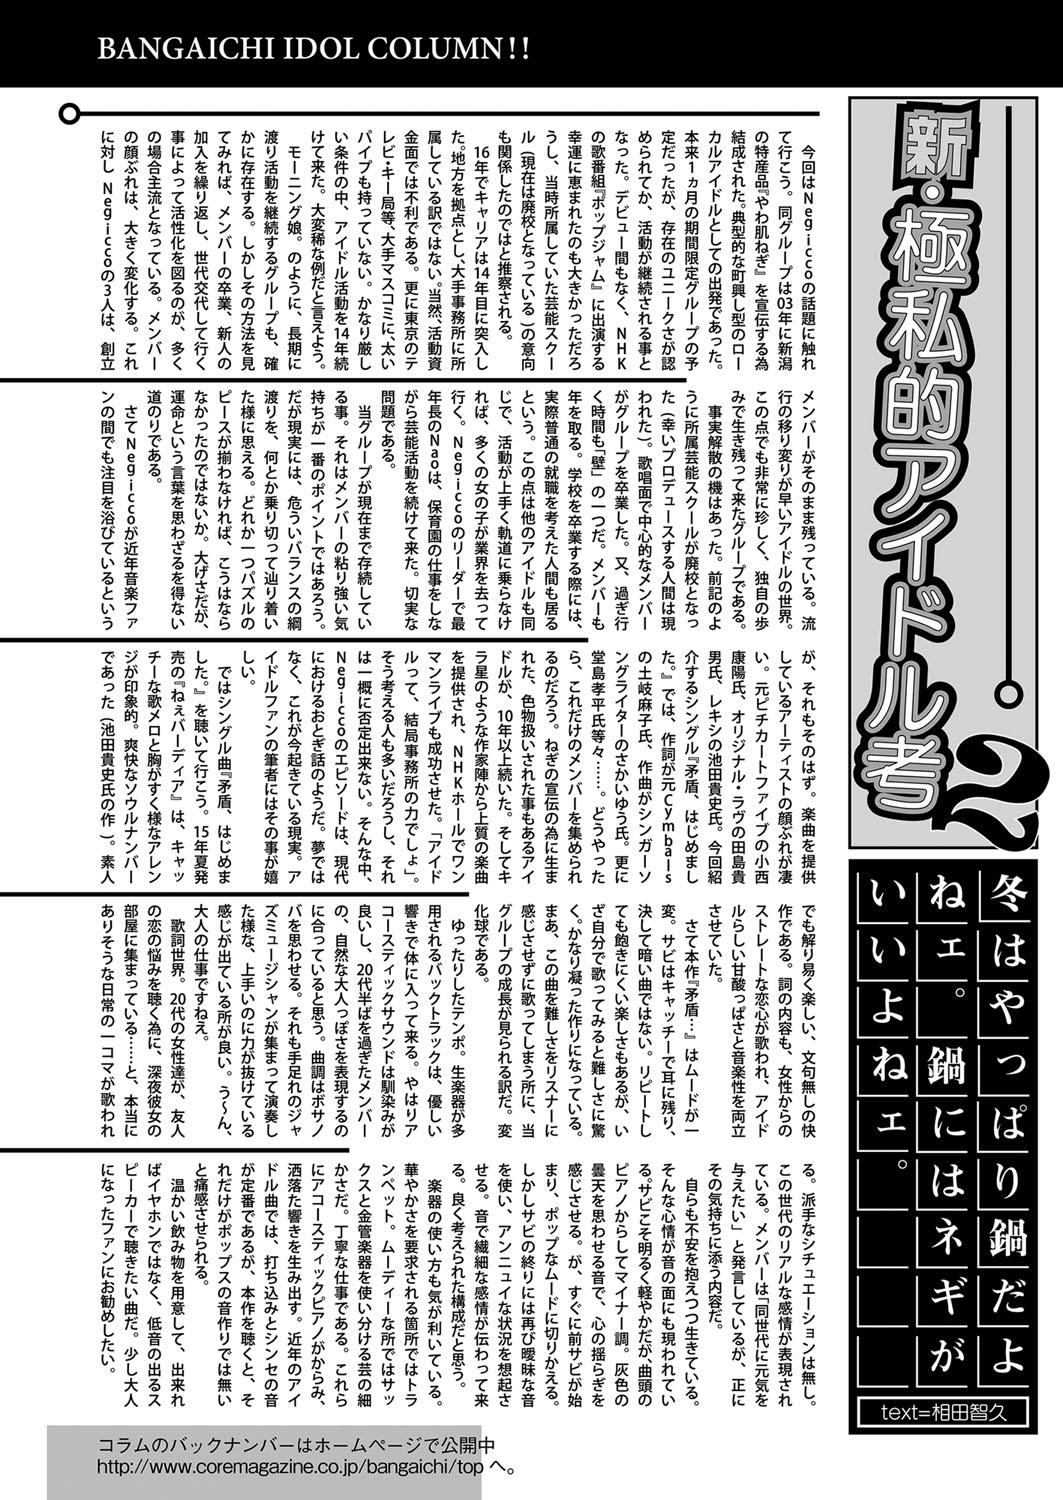 Car Web Manga Bangaichi Vol.5 Mulata - Page 157